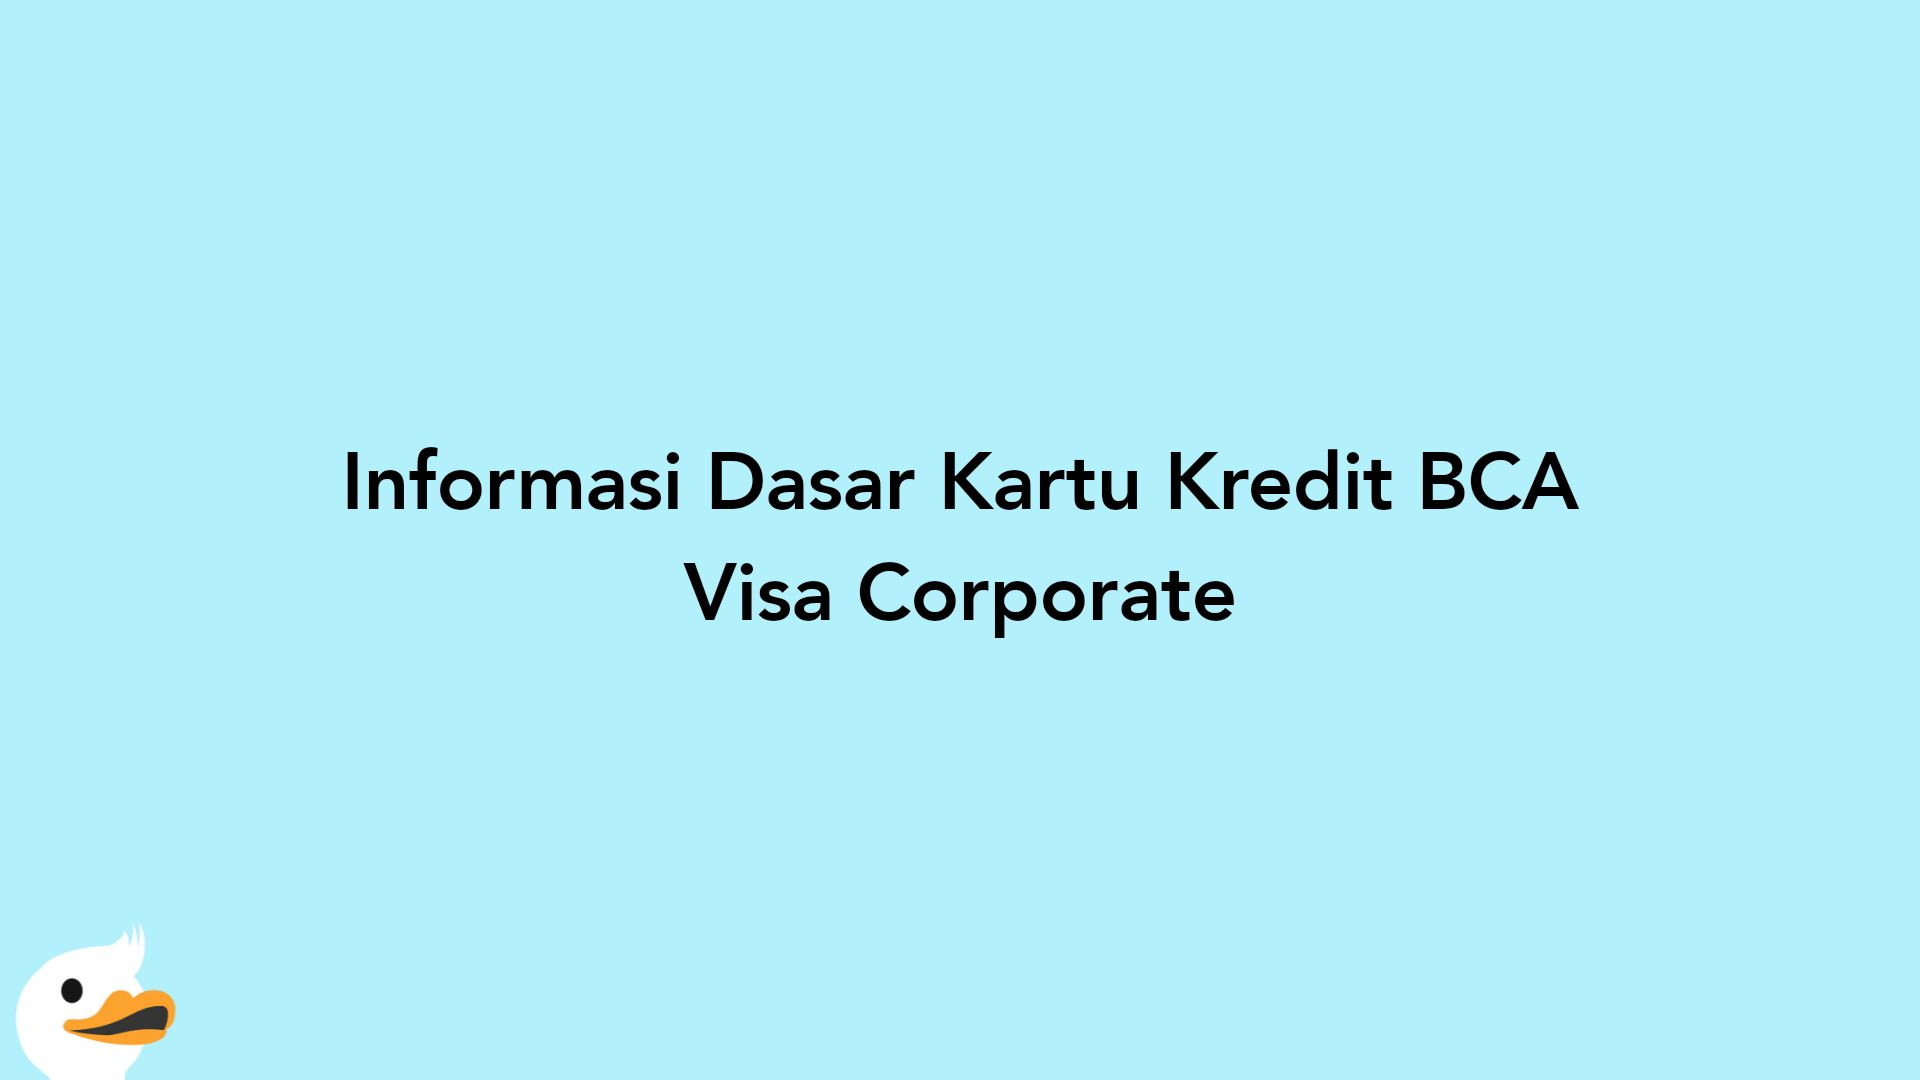 Informasi Dasar Kartu Kredit BCA Visa Corporate